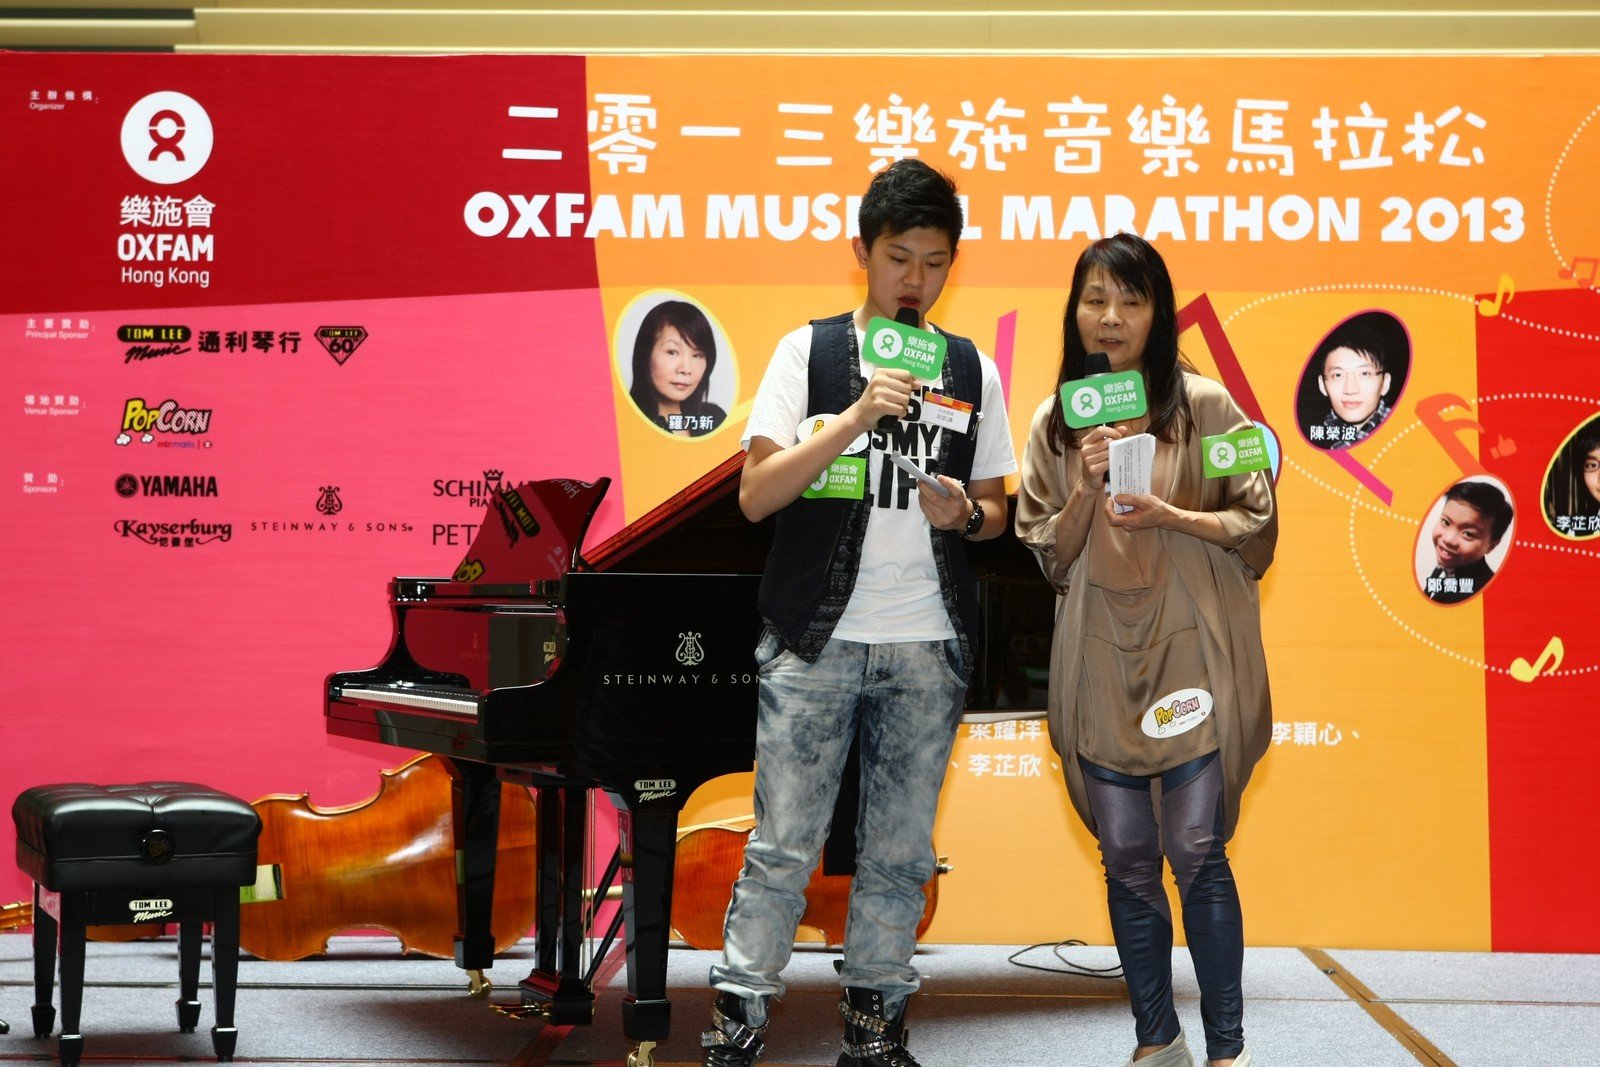 乐施音乐大使兼著名钢琴家罗乃新，与天才小歌手及演员莫凯谦为2013「乐施音乐马拉松」开幕礼担任司仪。